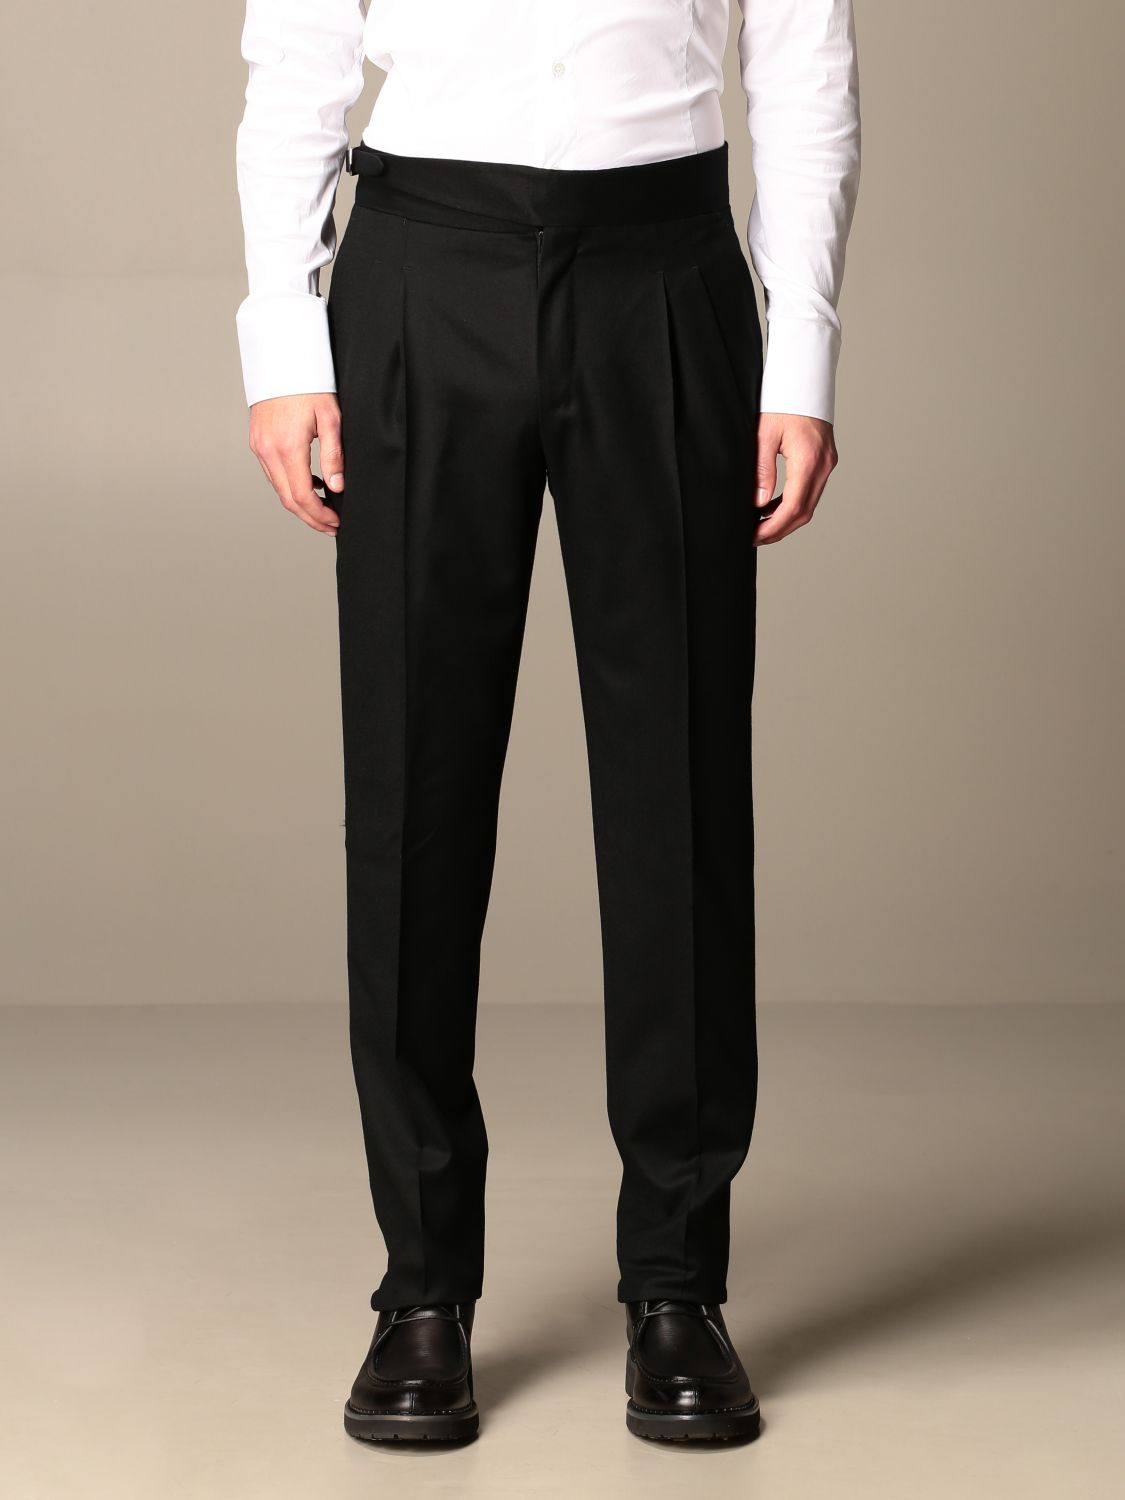 Classic Pt trousers with regular waist | Pants Pt Men Black | Pants Pt ...